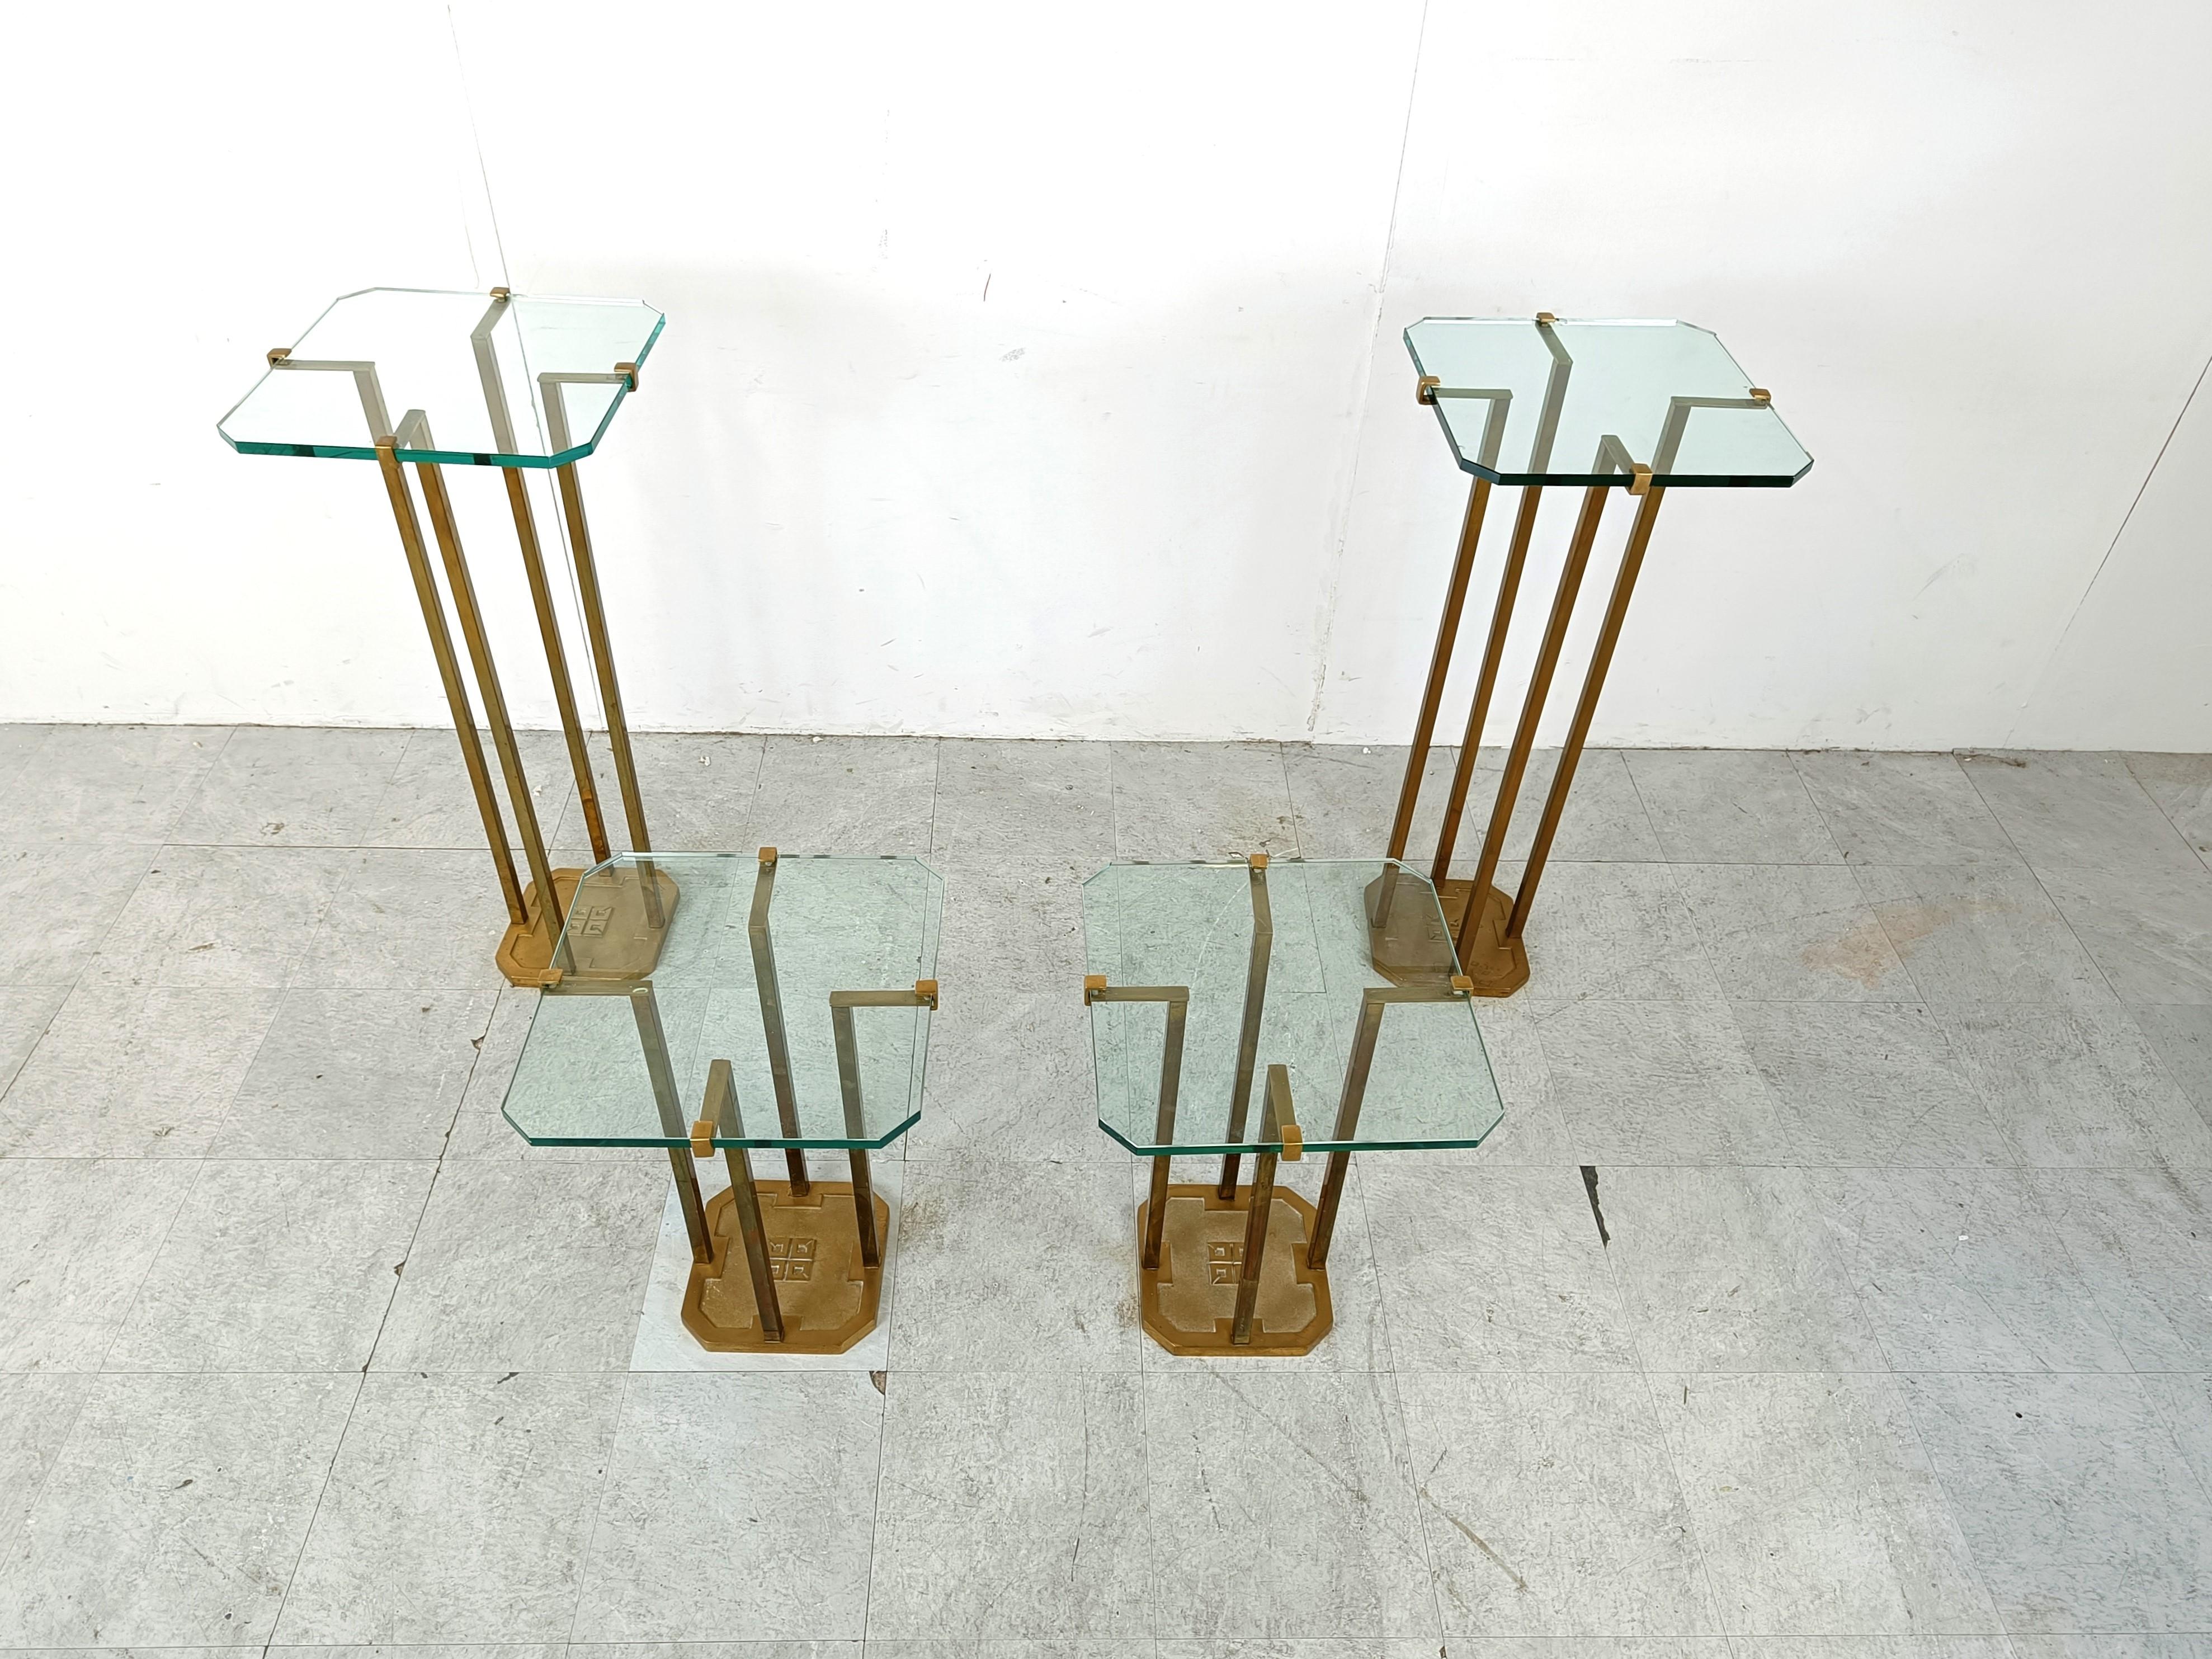 Sehr seltener Satz von Beistelltischen des Modells T18 mit Beinen aus Messingguss, entworfen von Peter Ghyczy.

Schönes Design, das das Glas auf einzigartige Weise hält. 

Tischplatte aus dickem Klarglas.

Es ist sehr einzigartig, ein Set wie dieses